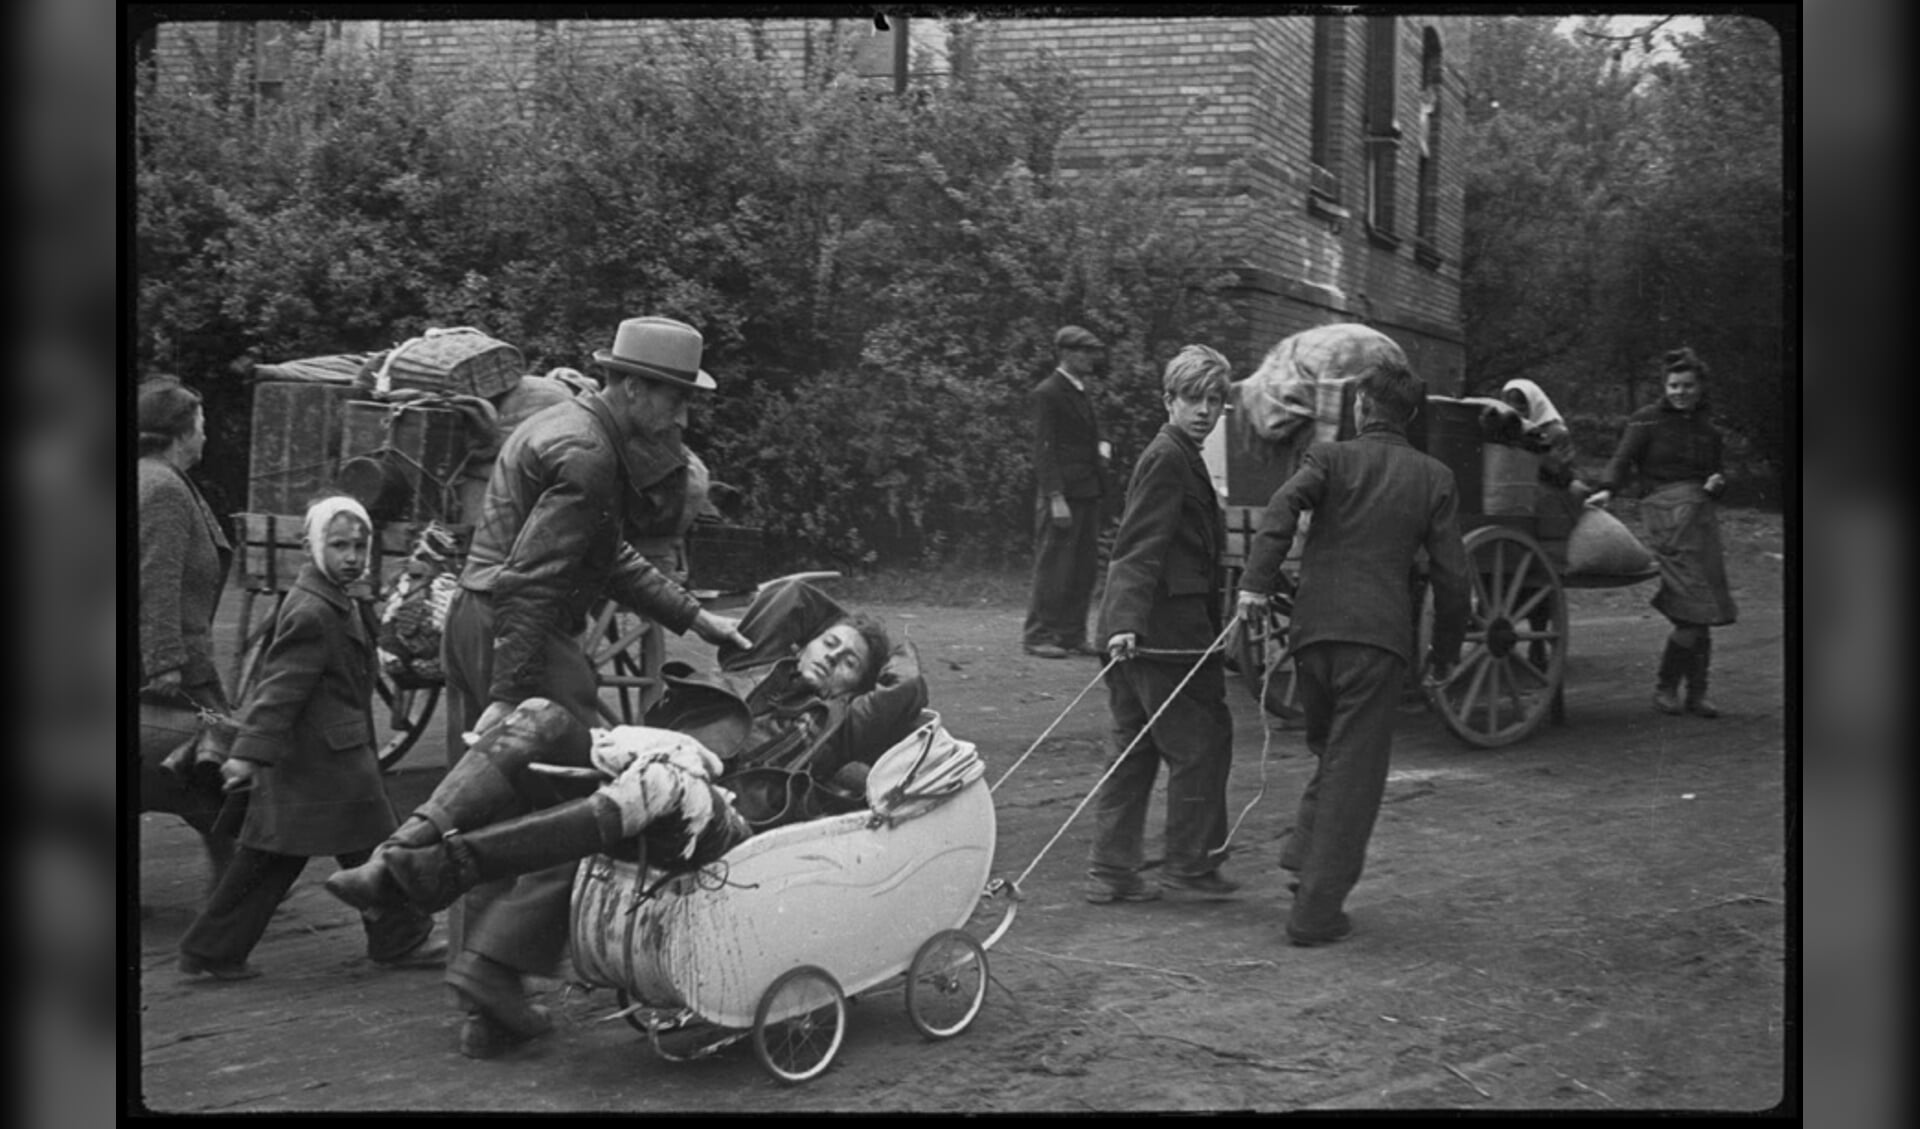 Gewond, op weg naar huis, Berlijn, mei 1945